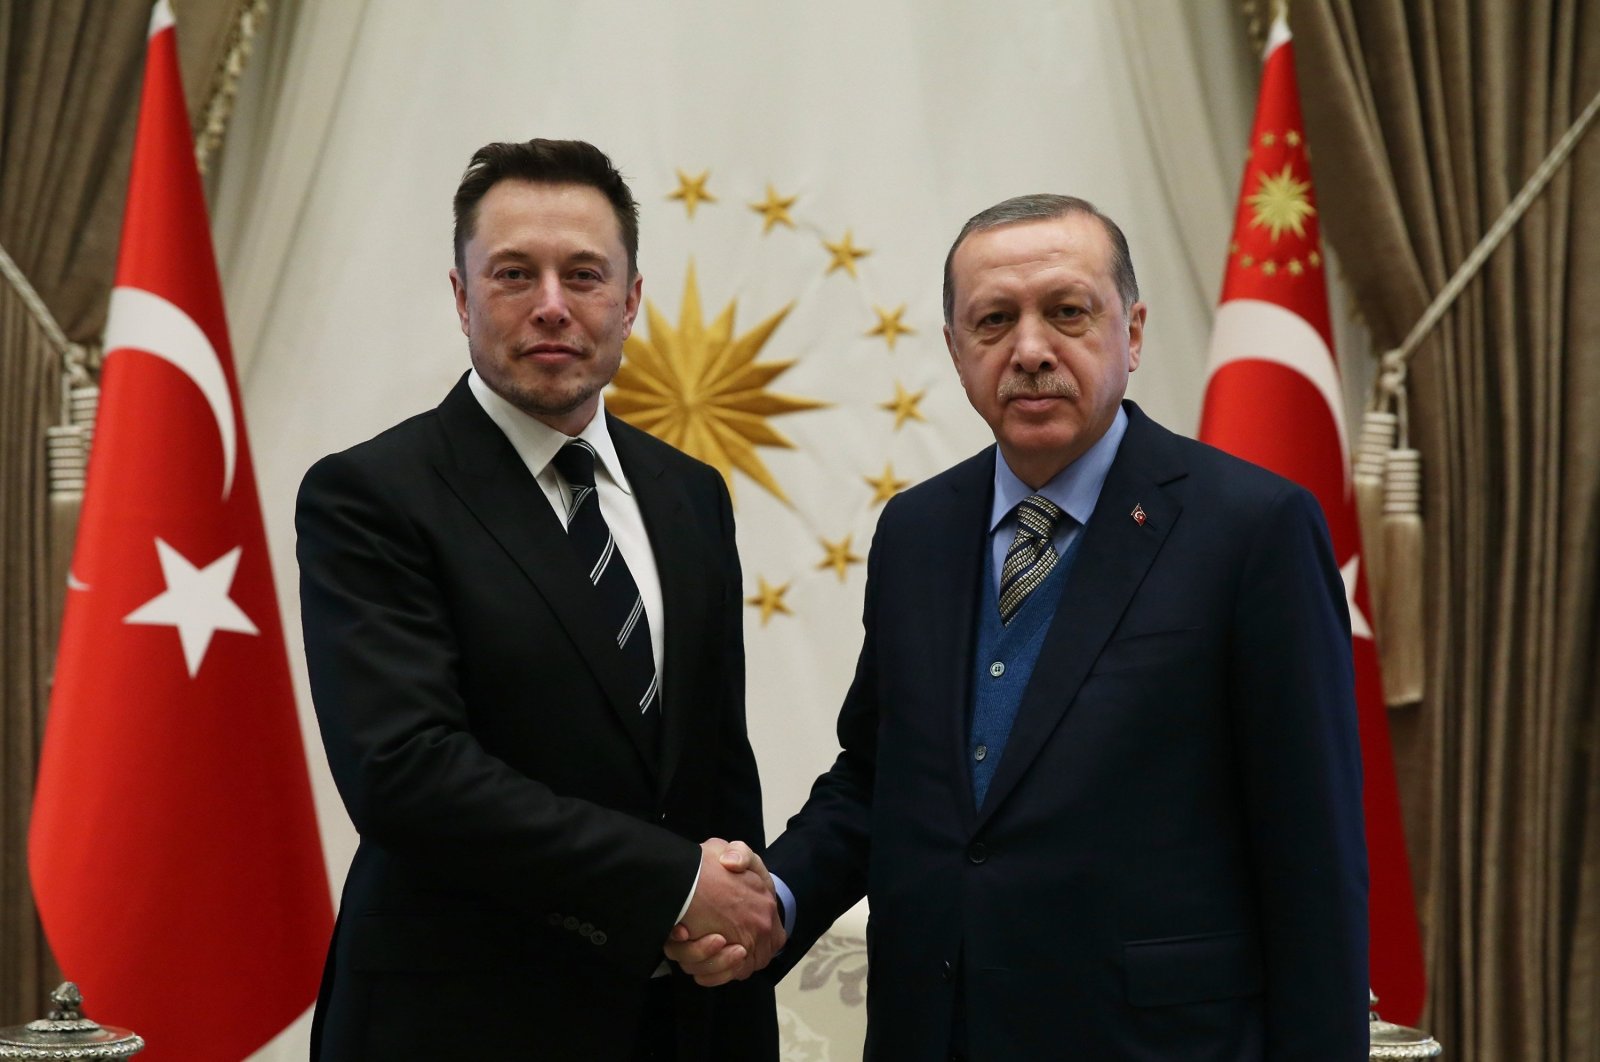 Erdoğan, Elon Musk ile Twitter’ın geçmişteki sansürünü görüşebilir